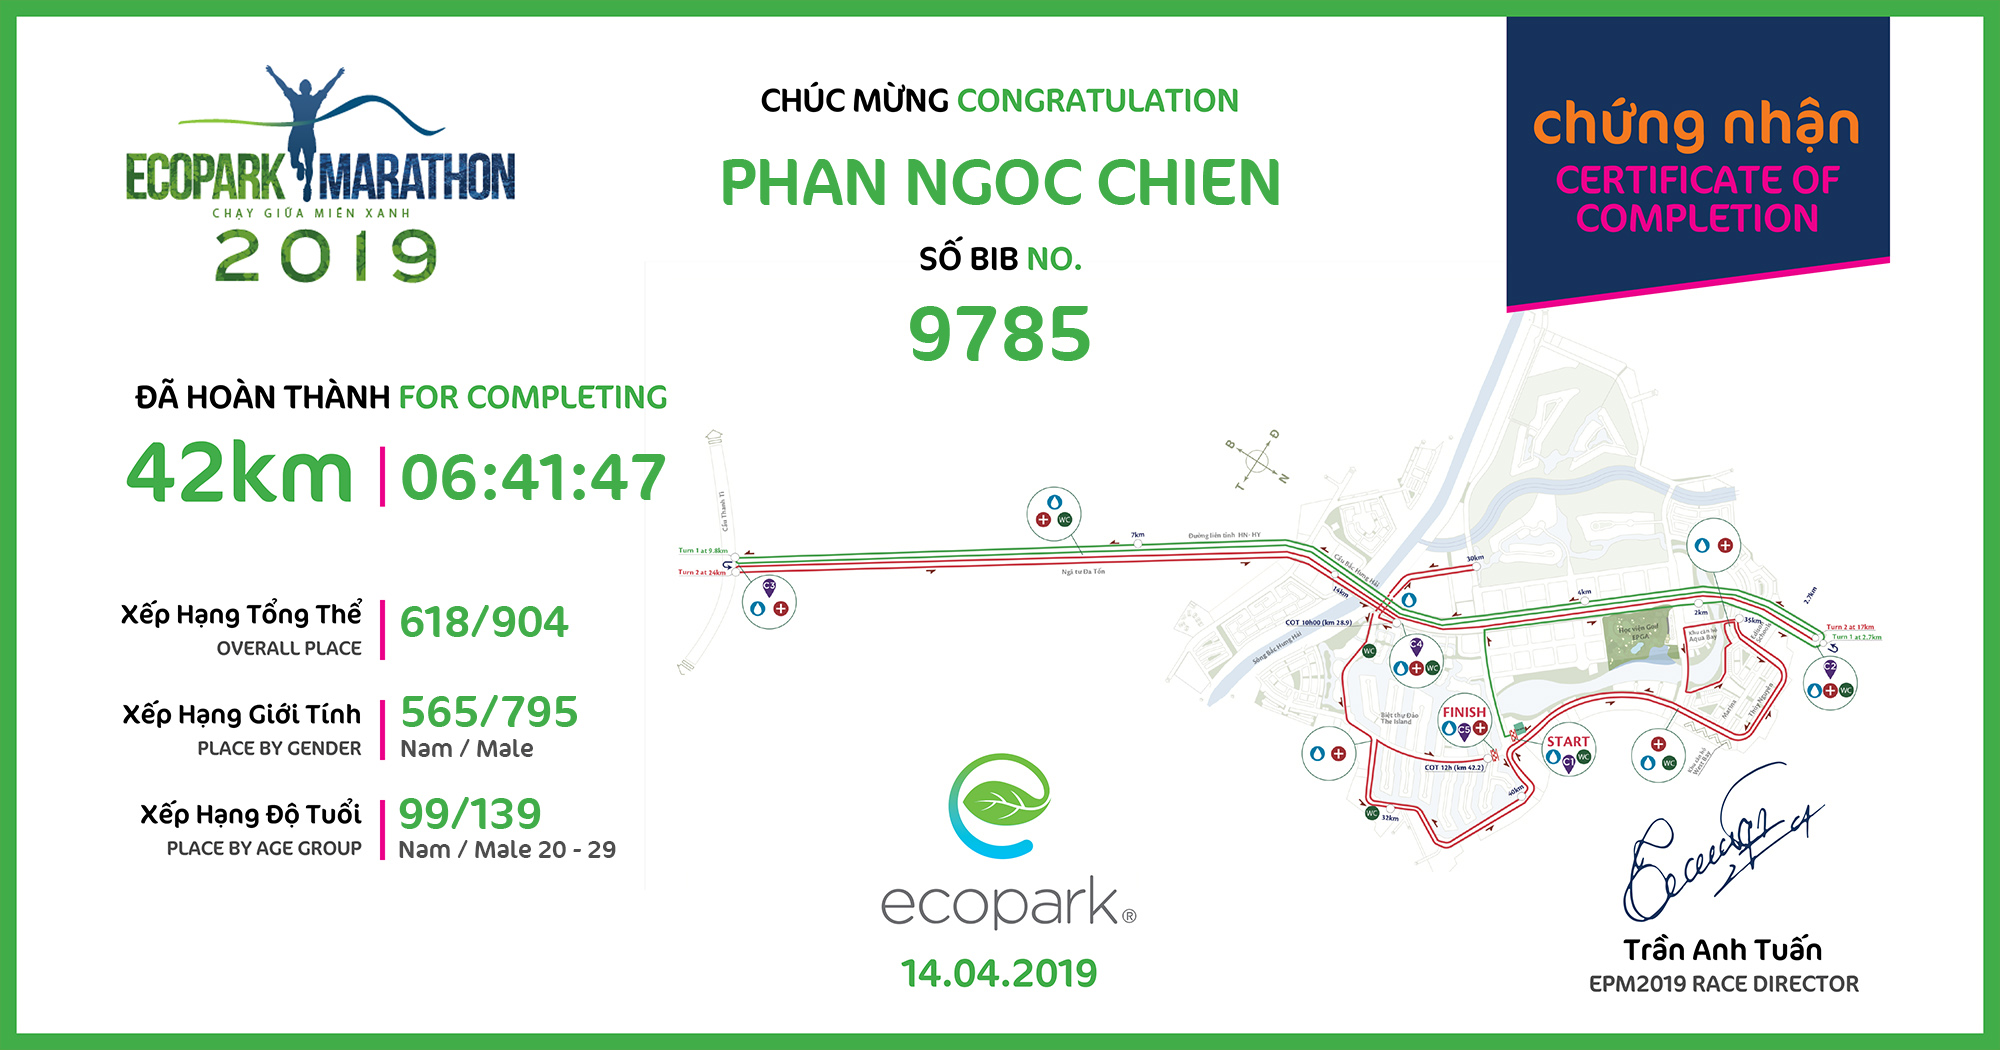 9785 - Phan Ngoc Chien